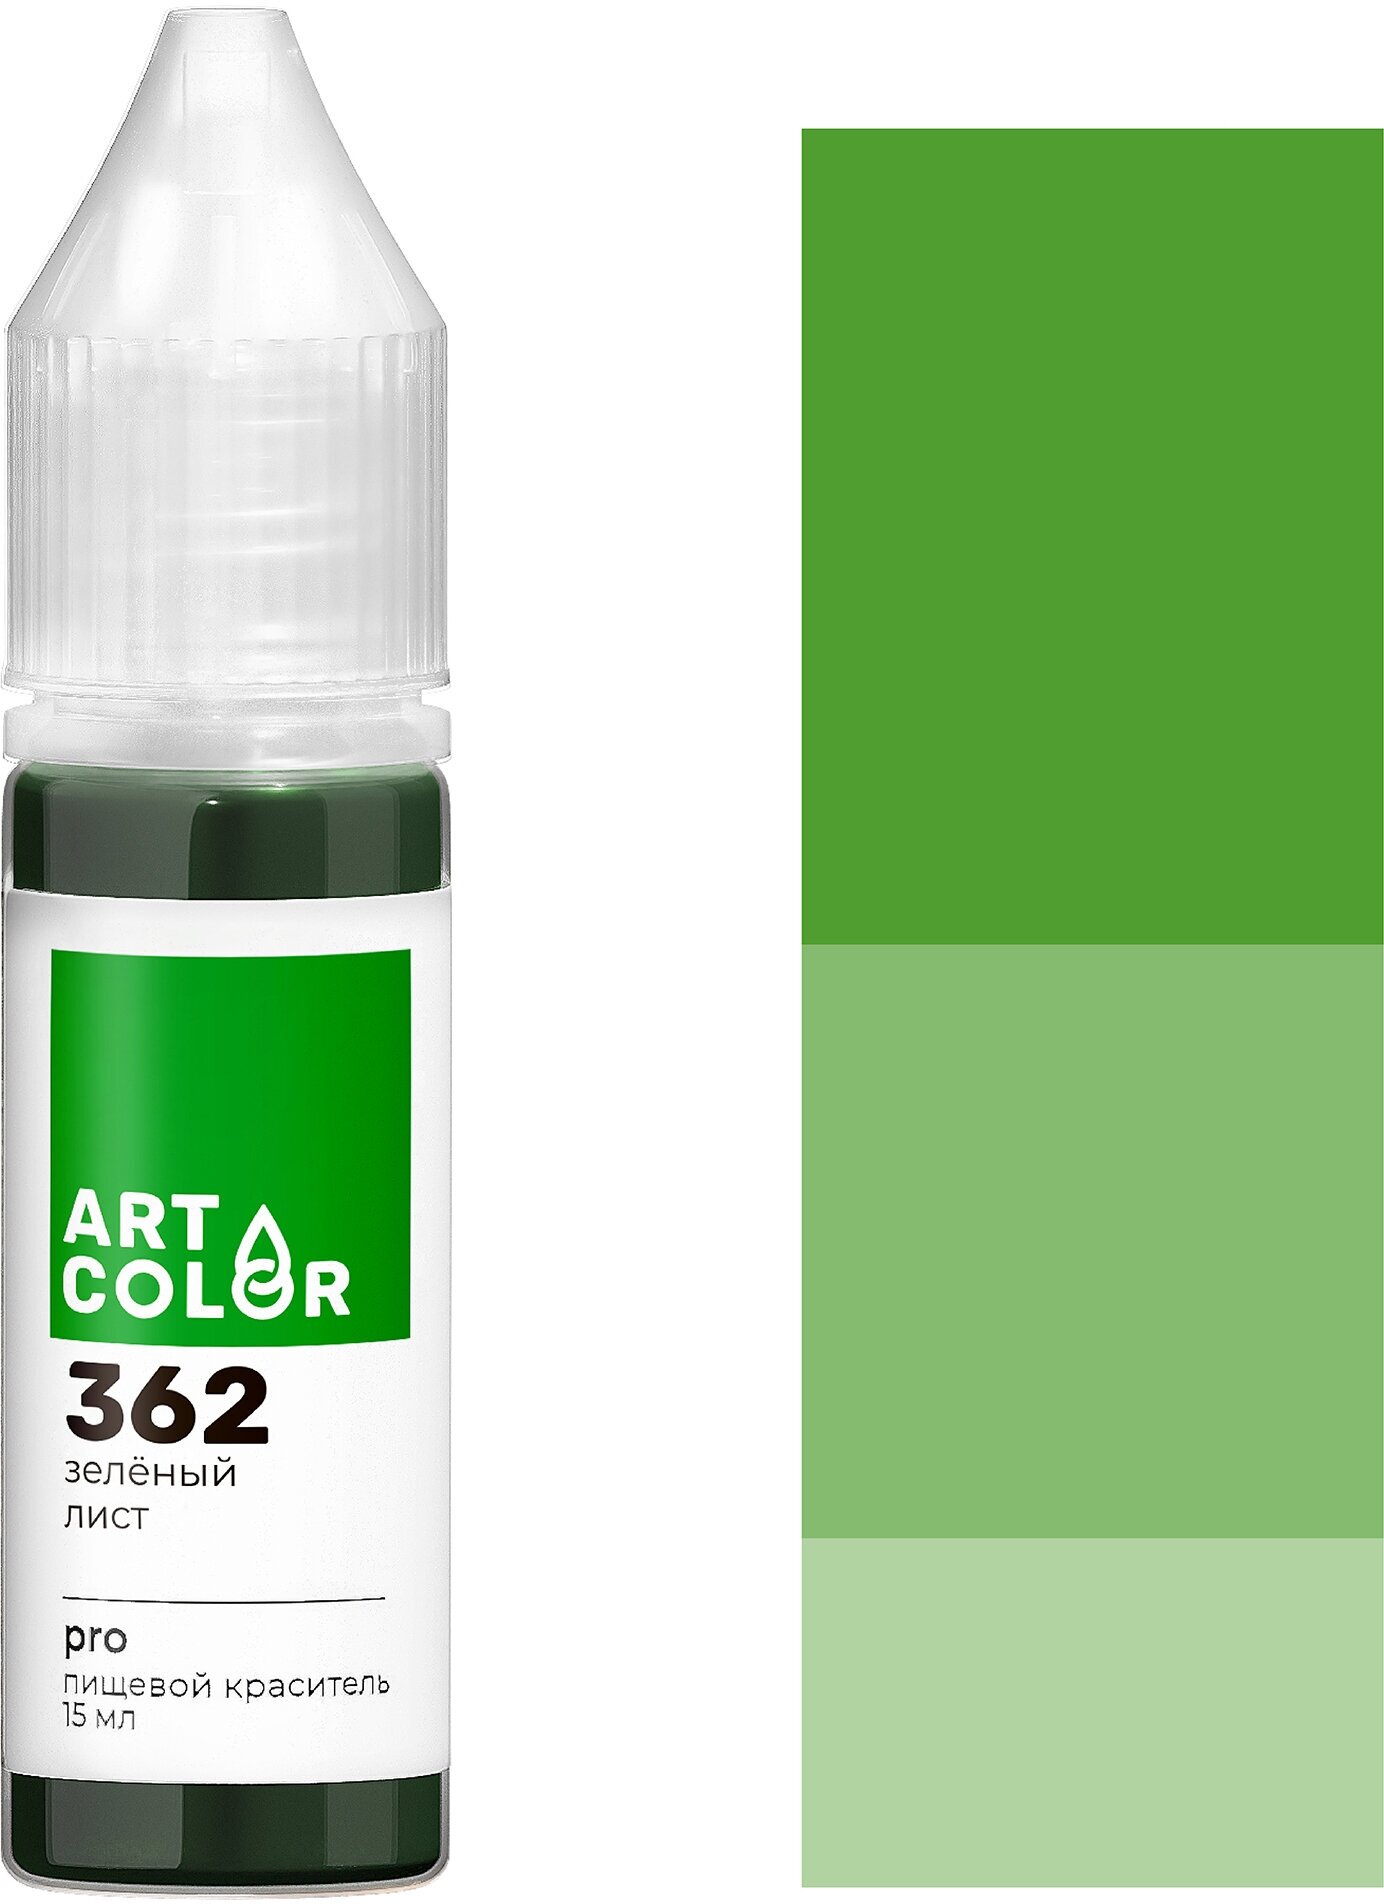 Краска Зеленый лист гелевая Art Color Pro, 15 мл.